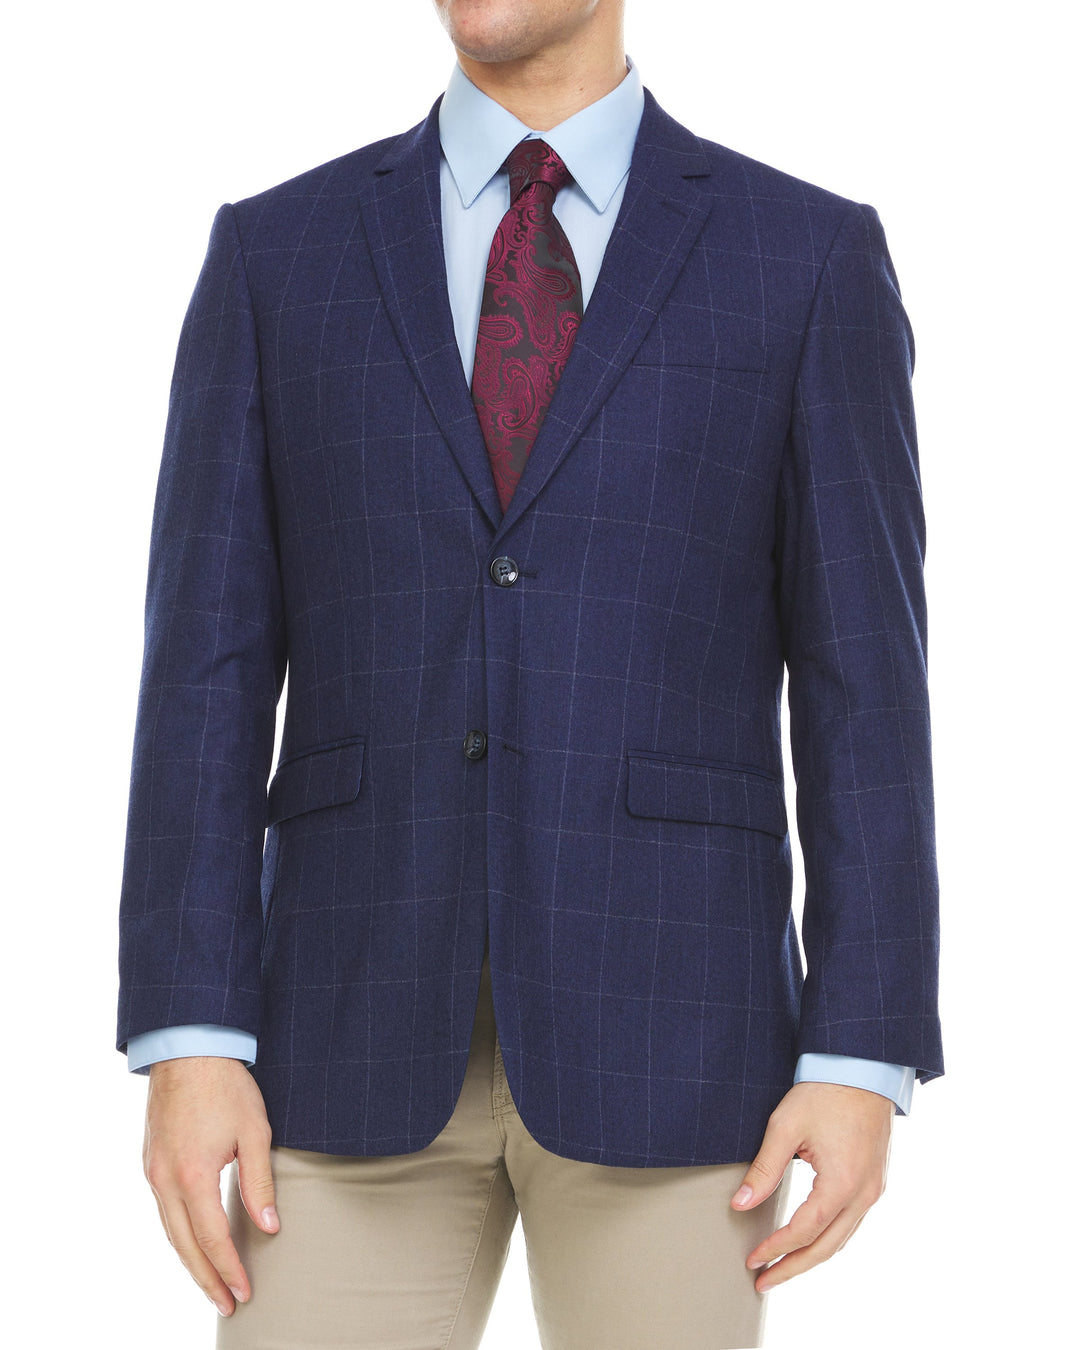 Adam Baker Men's Single Breasted 100% Wool Ultra Slim Fit Blazer/Sport Coat -Navy Windowpane